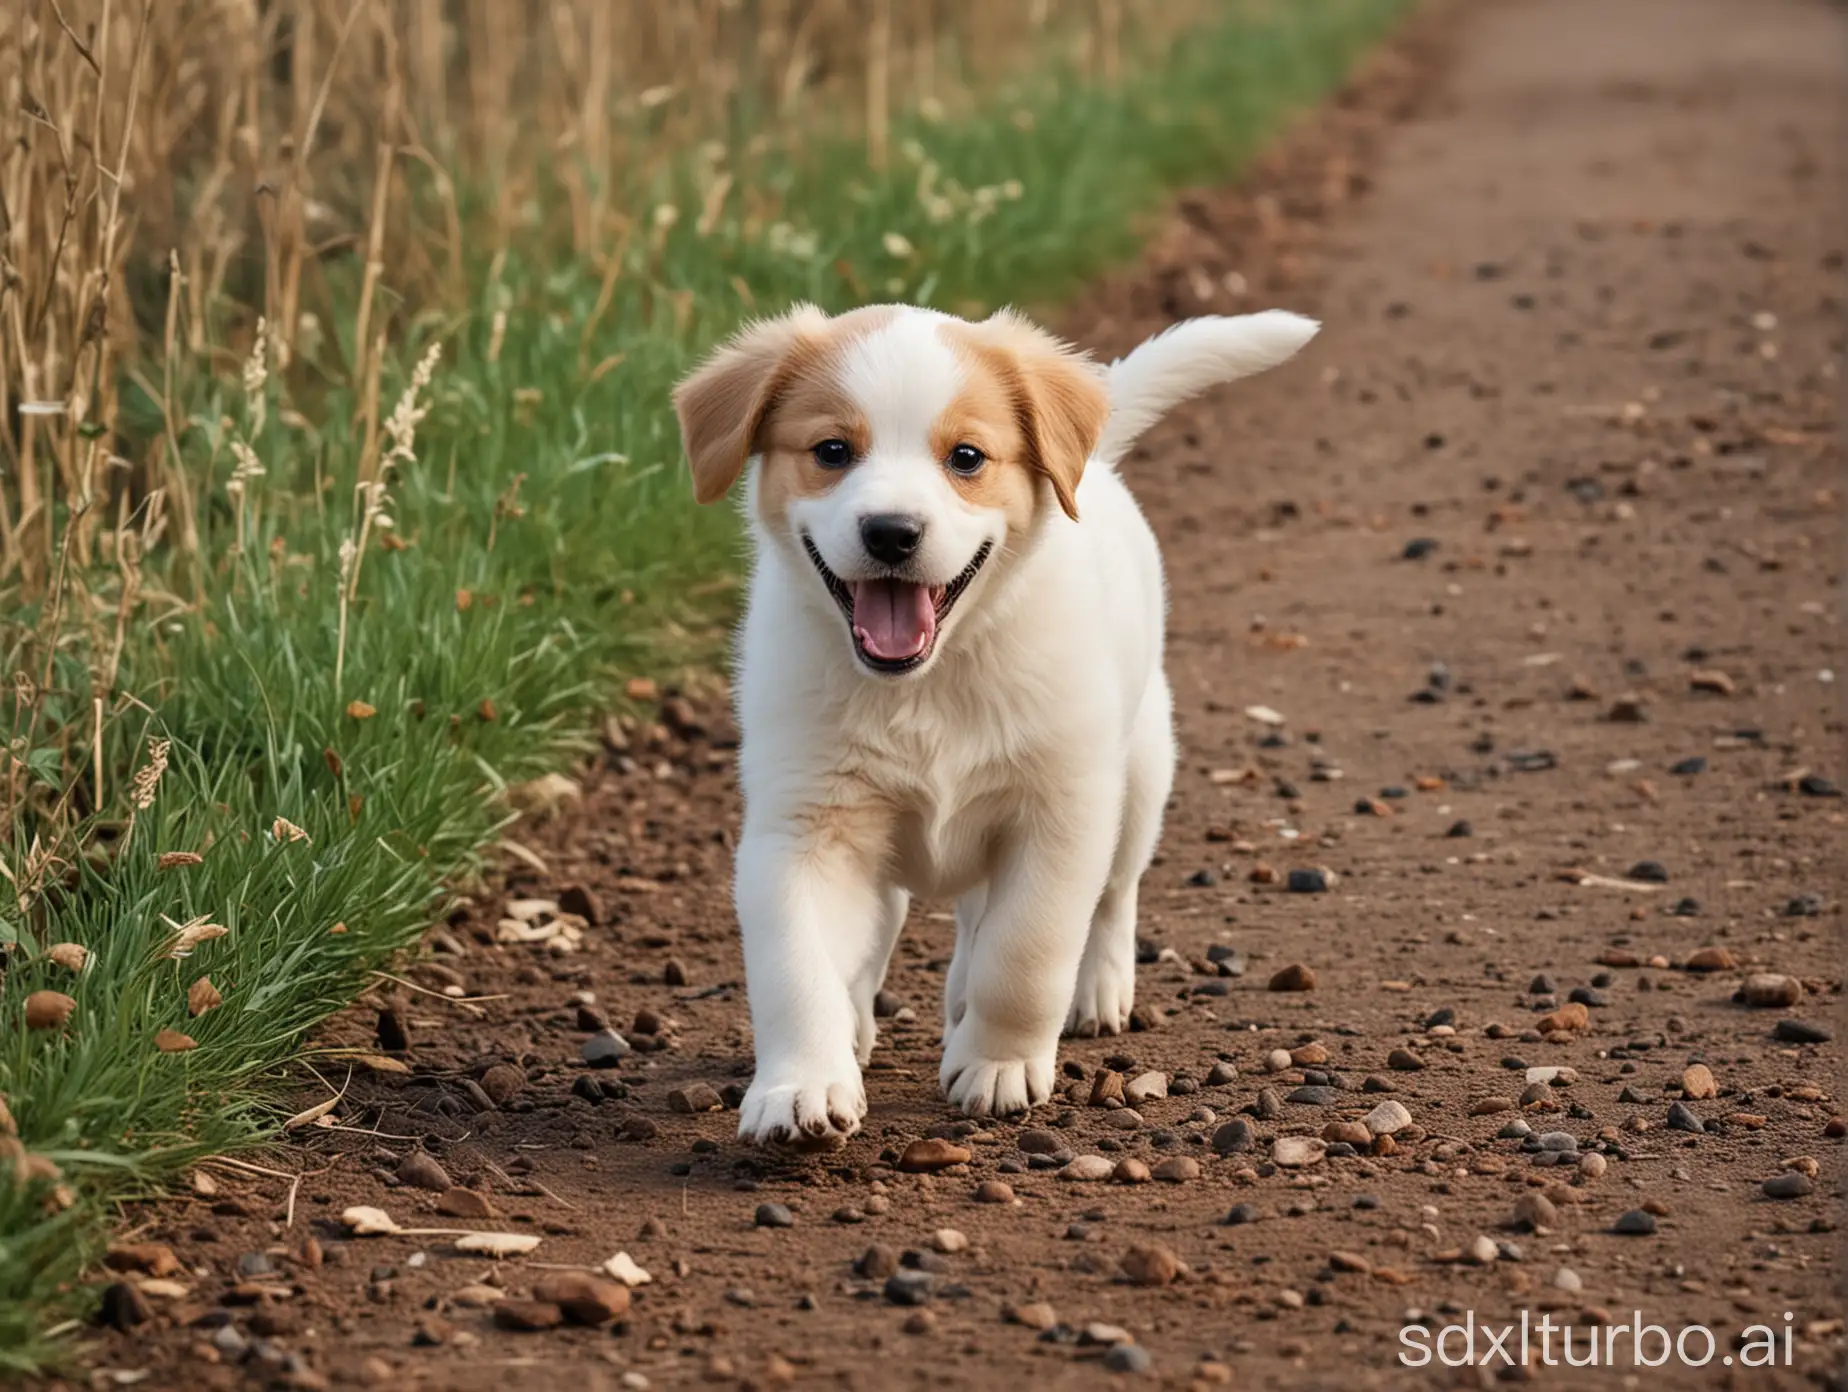 a happy puppy dog walking on the sideways